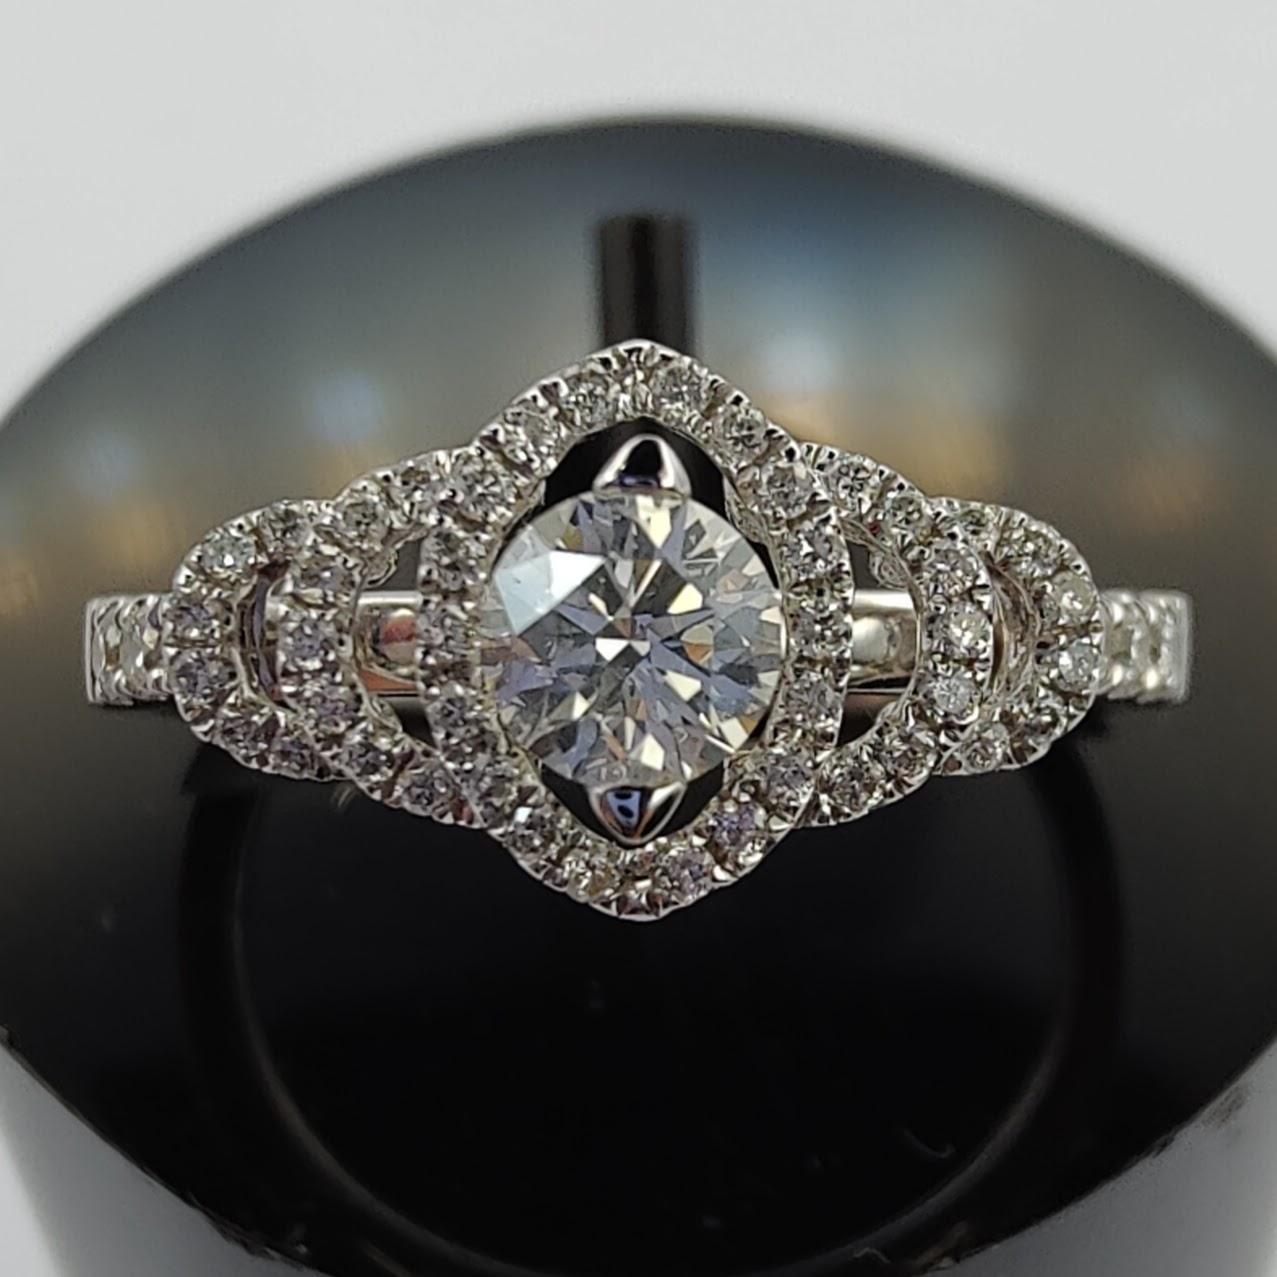 Dieser atemberaubende GIA-zertifizierte Diamant-Verlobungsring ist die perfekte Wahl für Ihren besonderen Tag. Der Ring ist mit einem funkelnden 0,61-Karat-Diamanten im Rundschliff besetzt, der von drei Halos aus kleineren Diamanten umgeben ist. Der